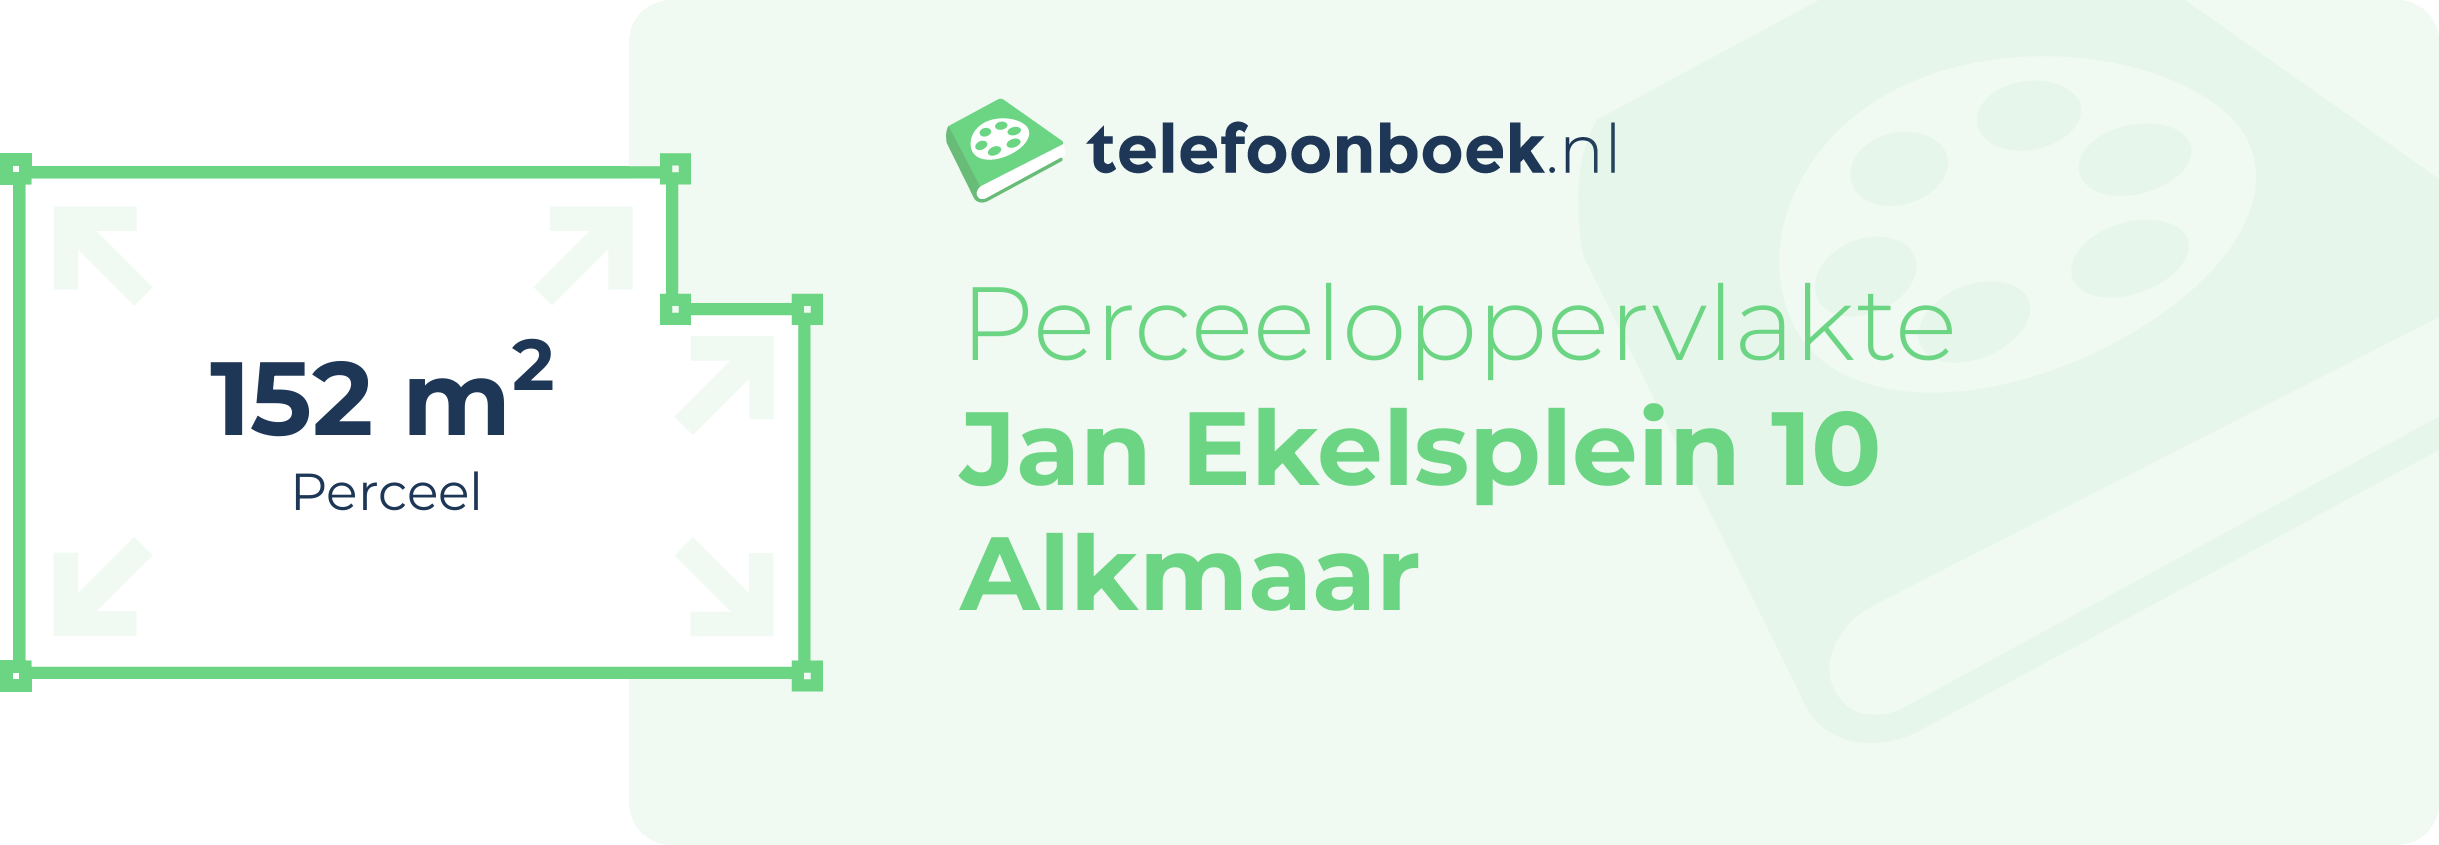 Perceeloppervlakte Jan Ekelsplein 10 Alkmaar